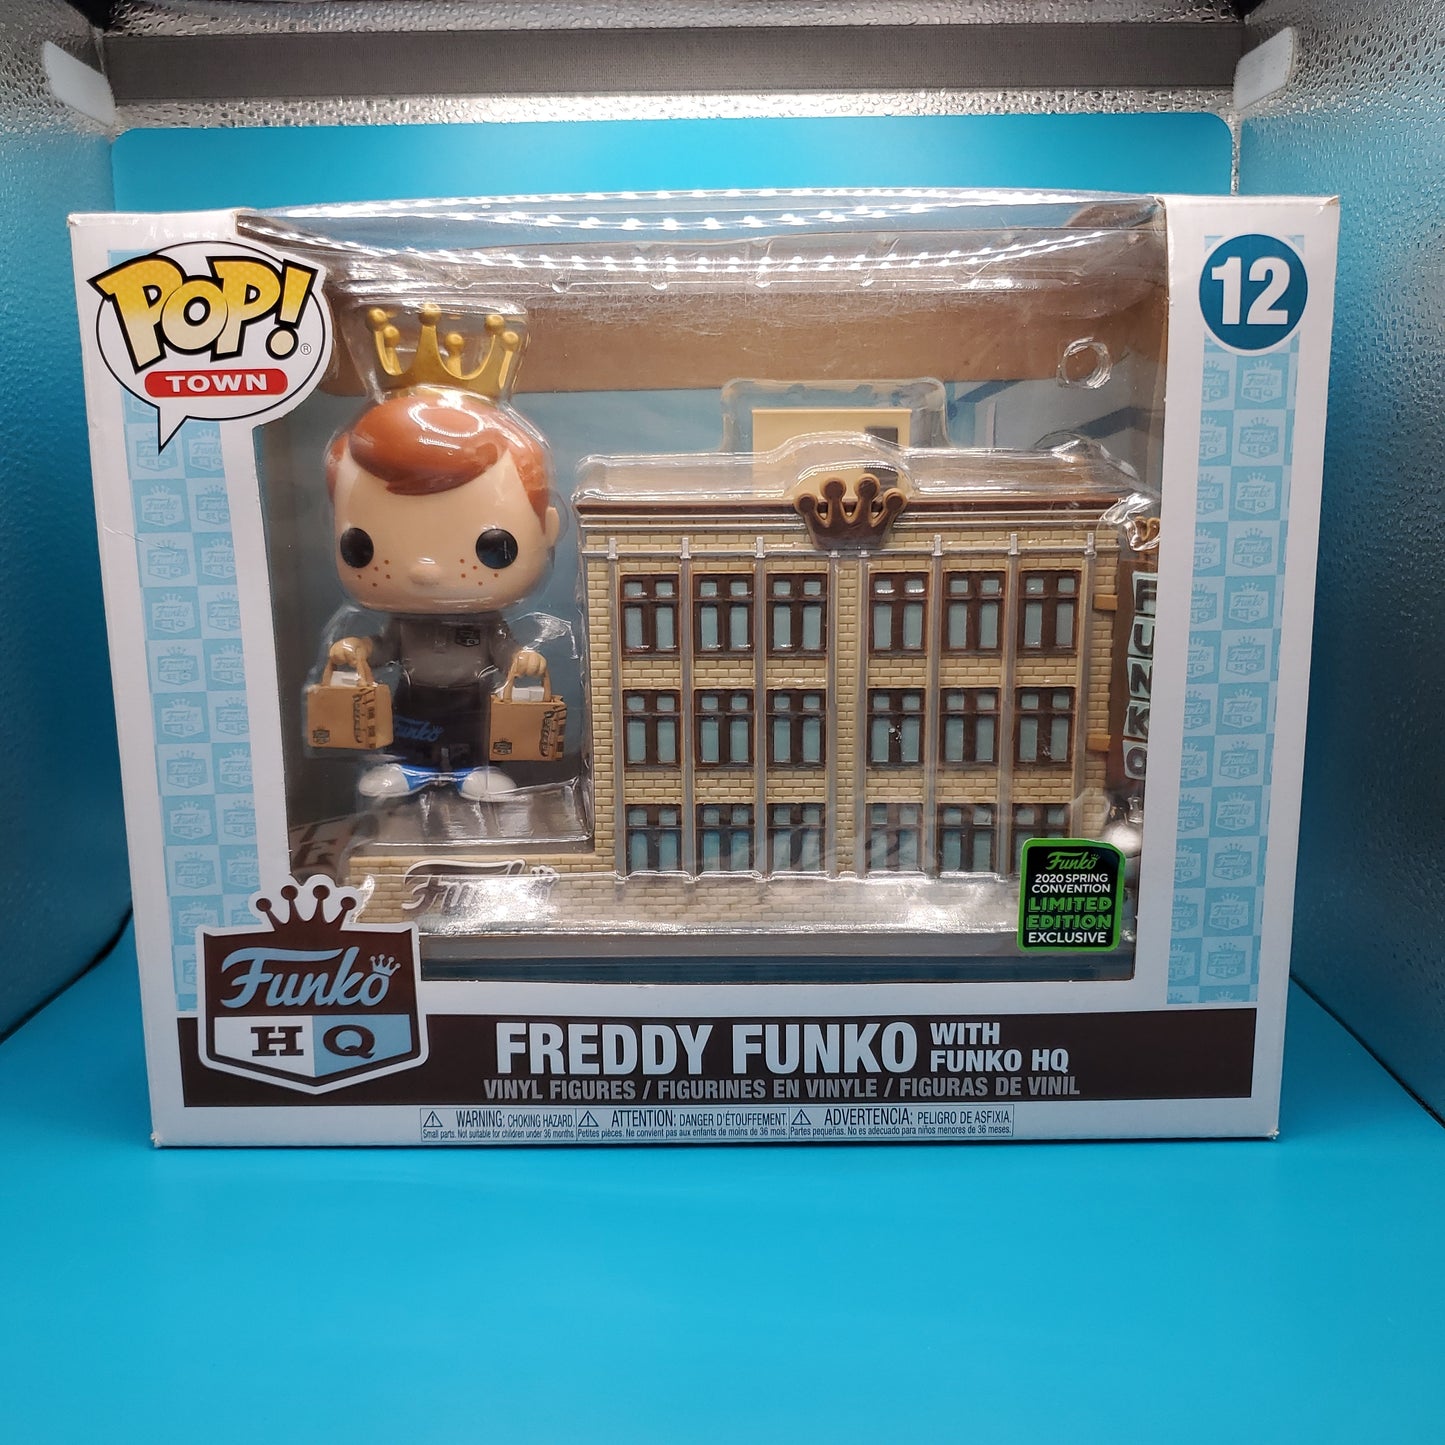 Freddy Funko with Funko HQ - 12 - SDCC 2020